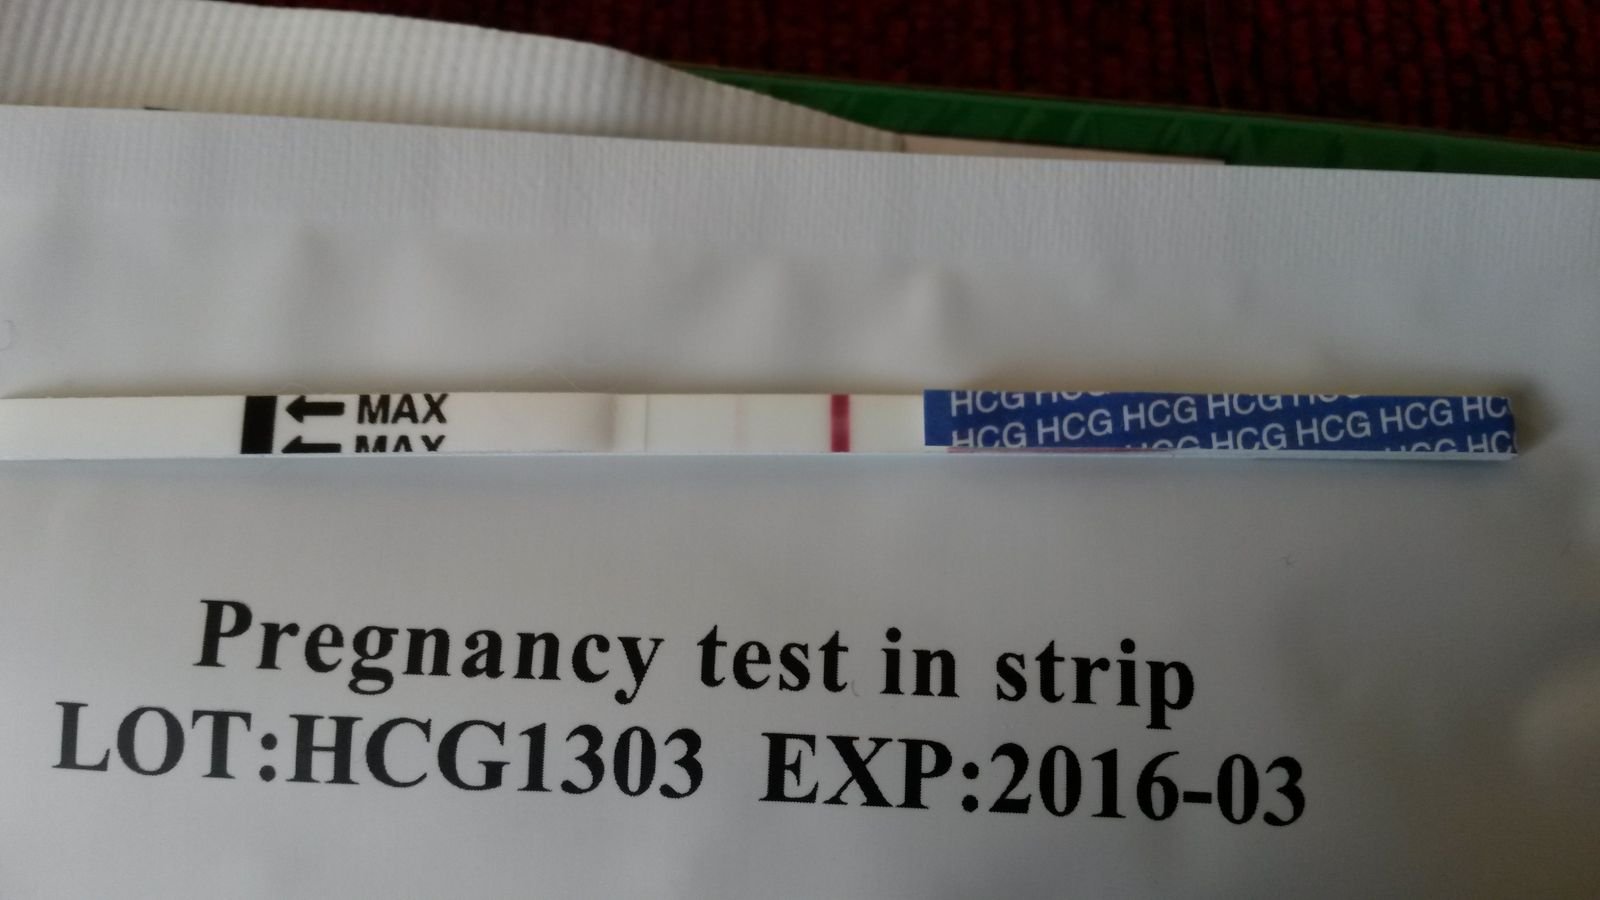 Тест на беременность 5 отзывы